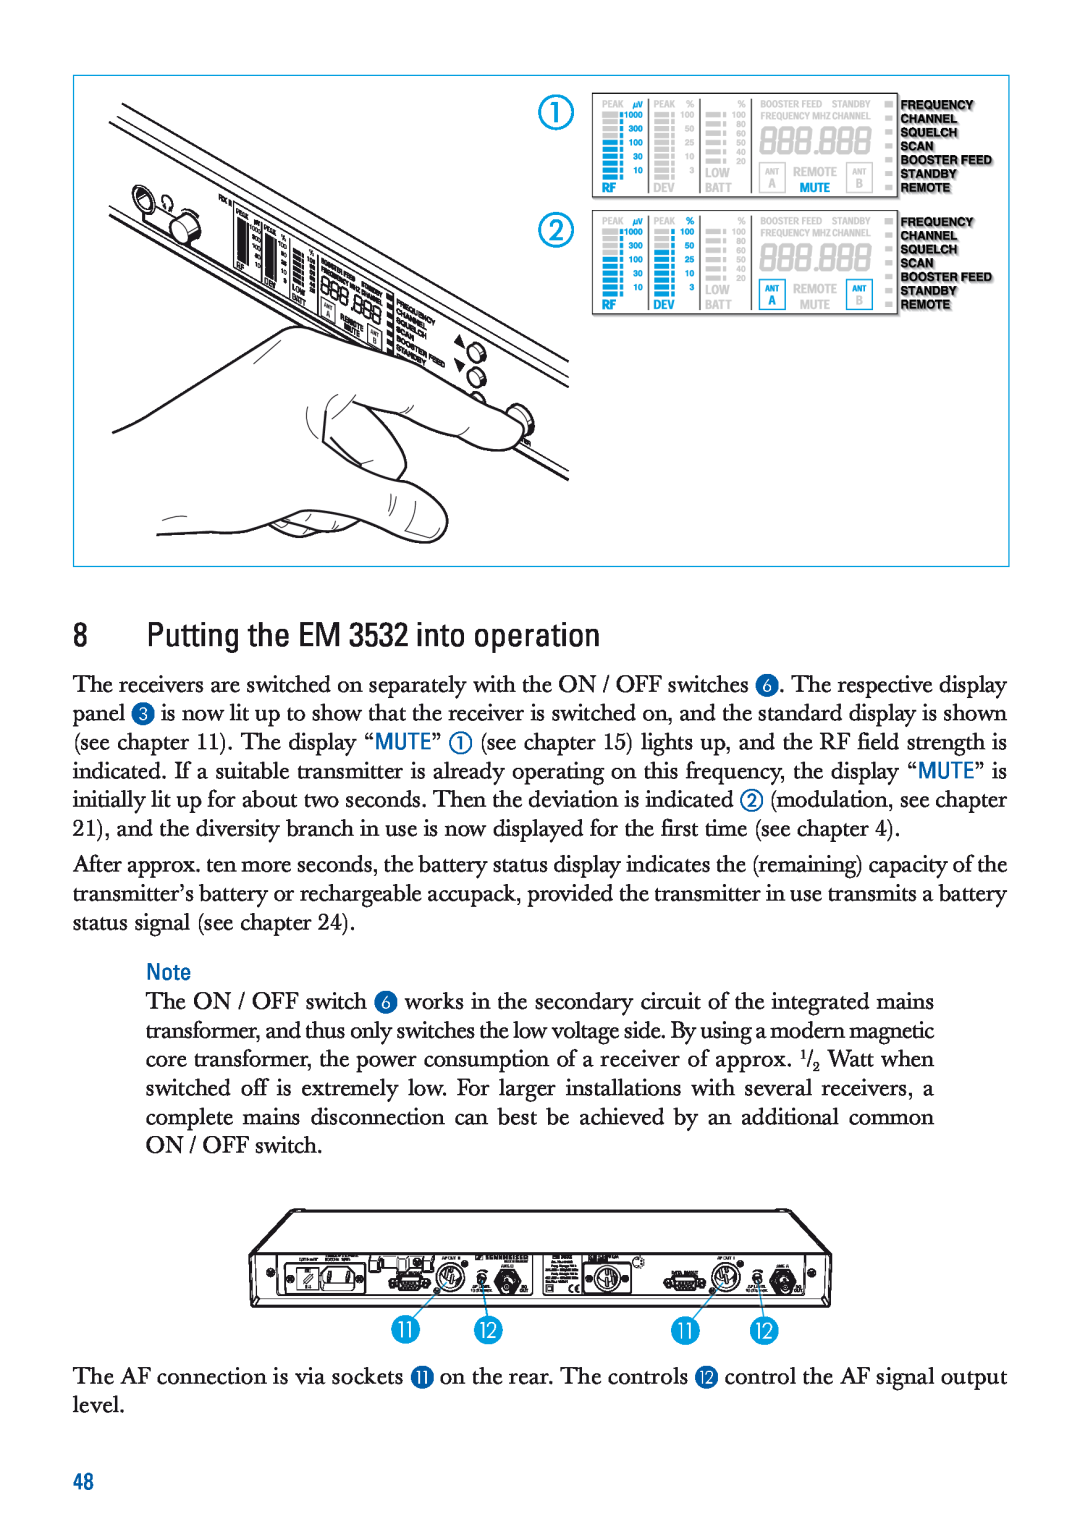 Sennheiser EM 3532-U manual Putting the EM 3532 into operation 